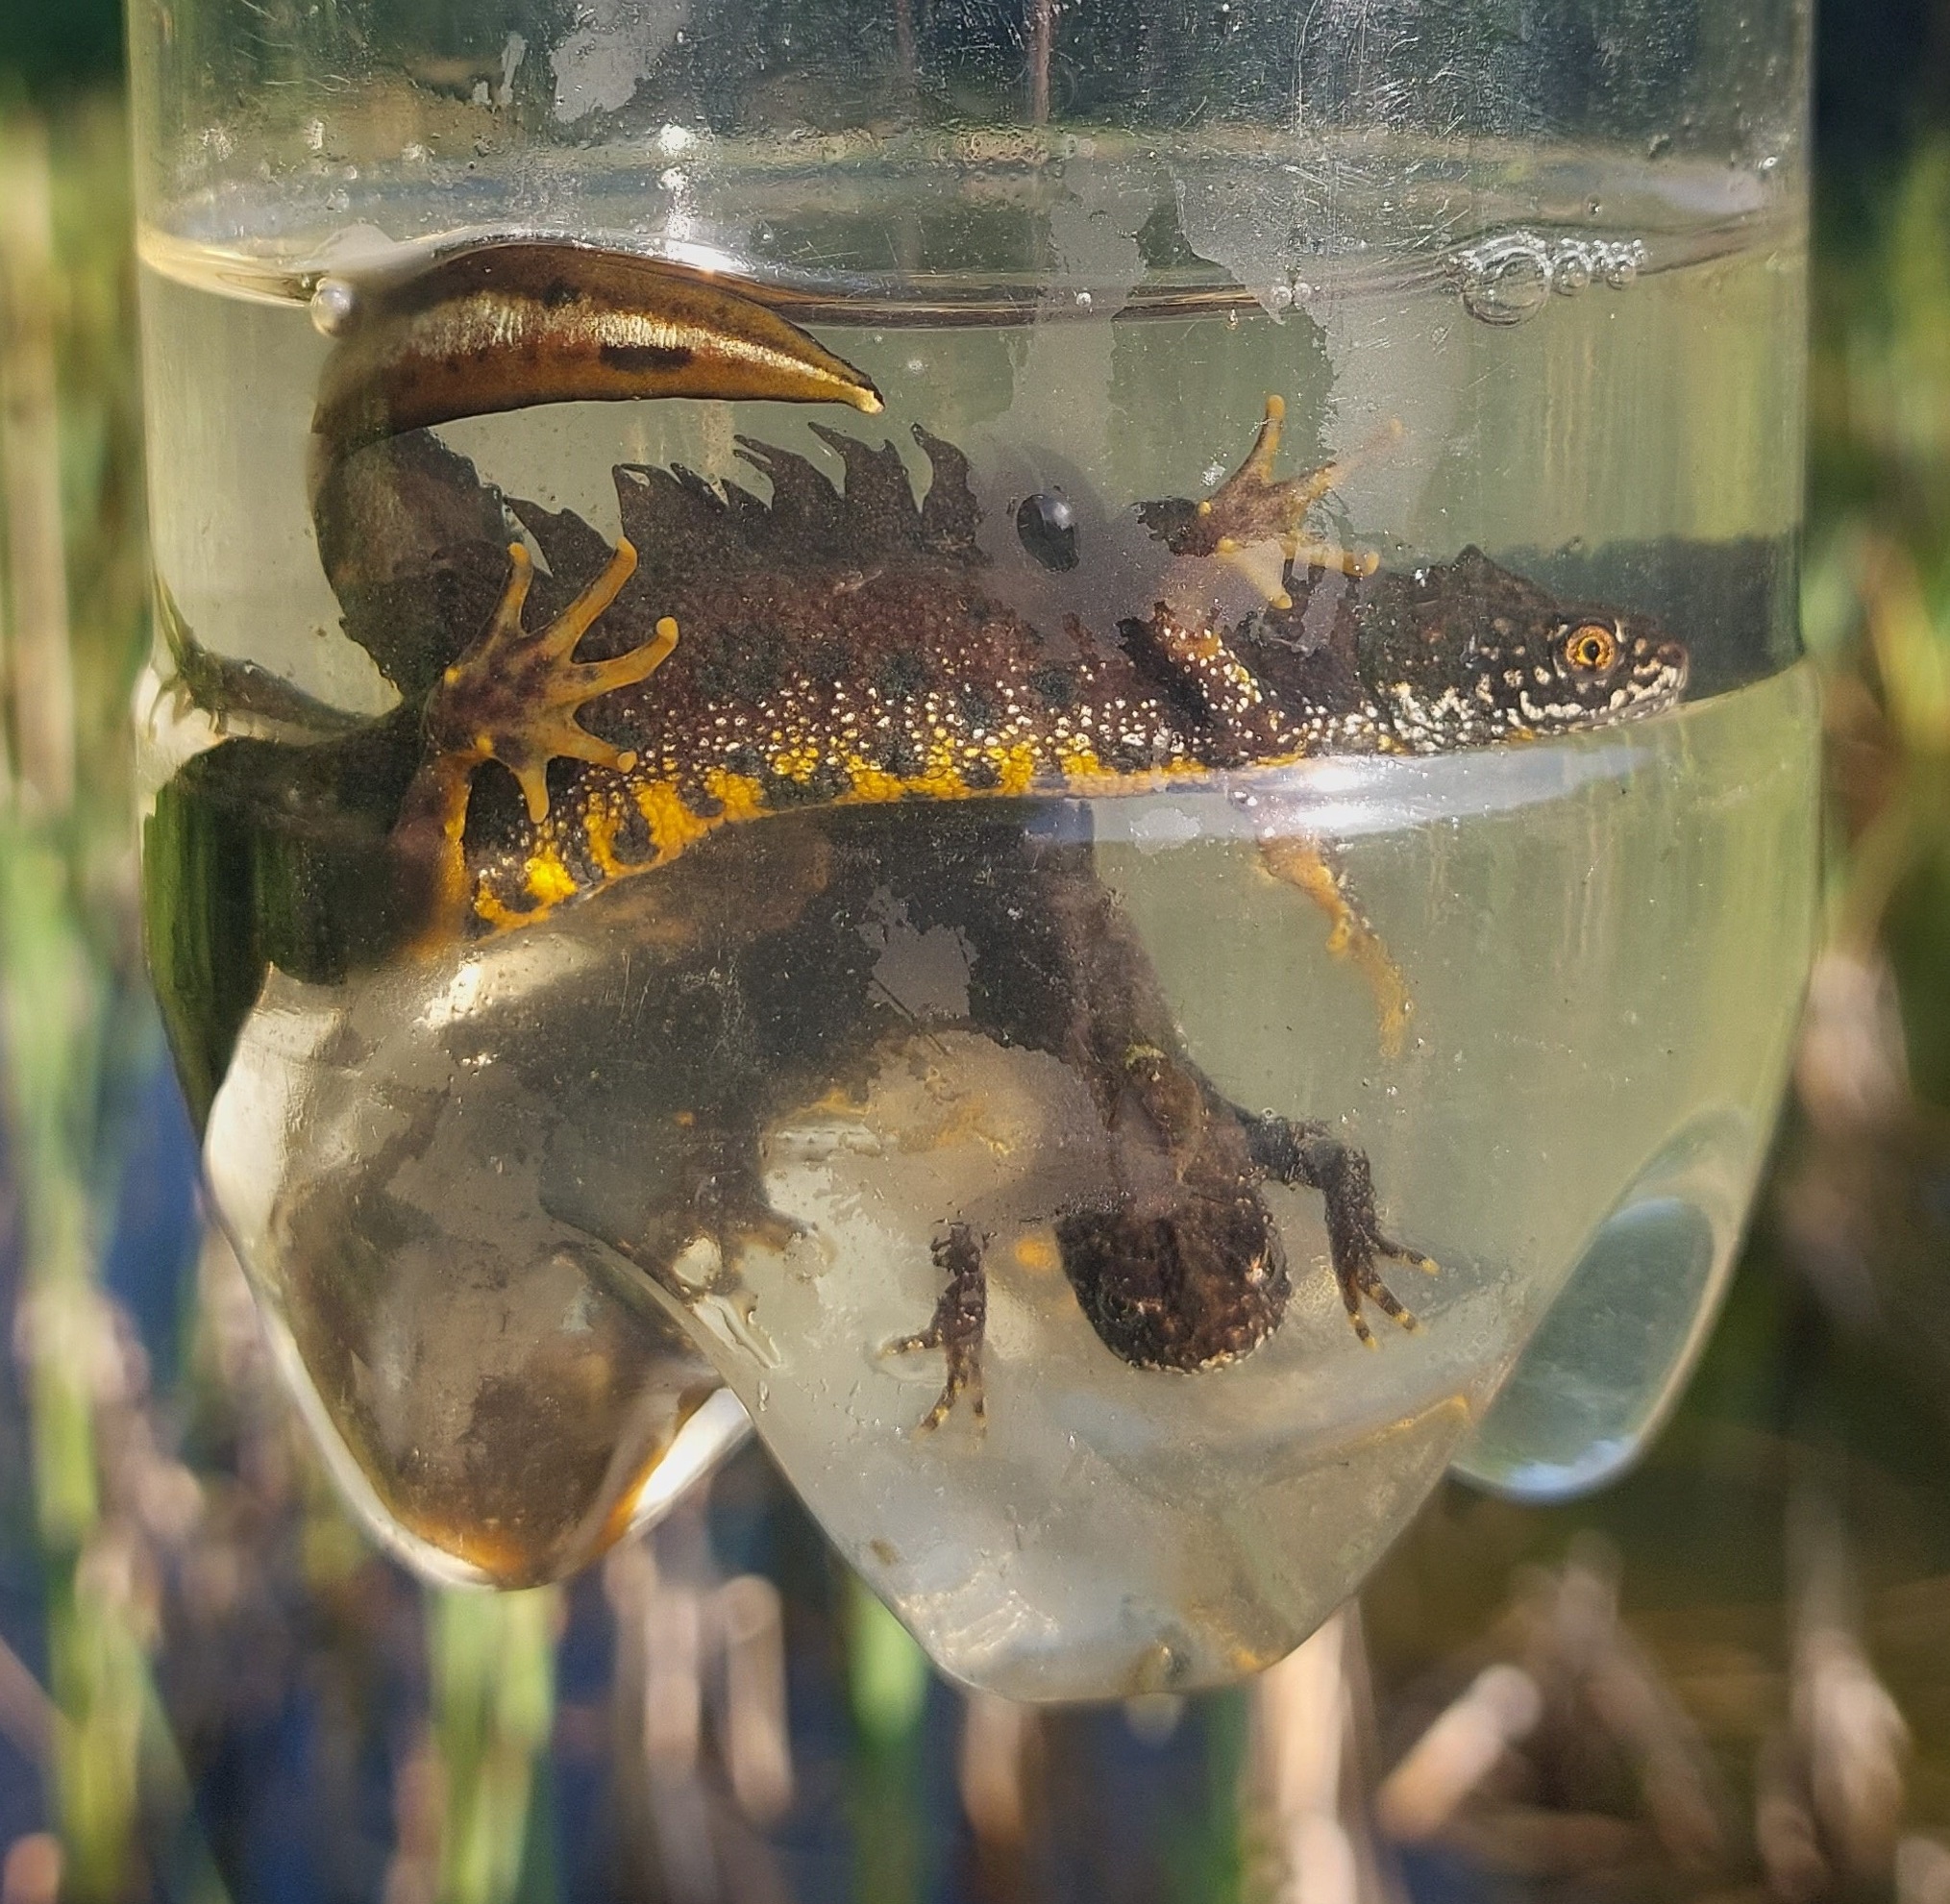 More ponds – more newts